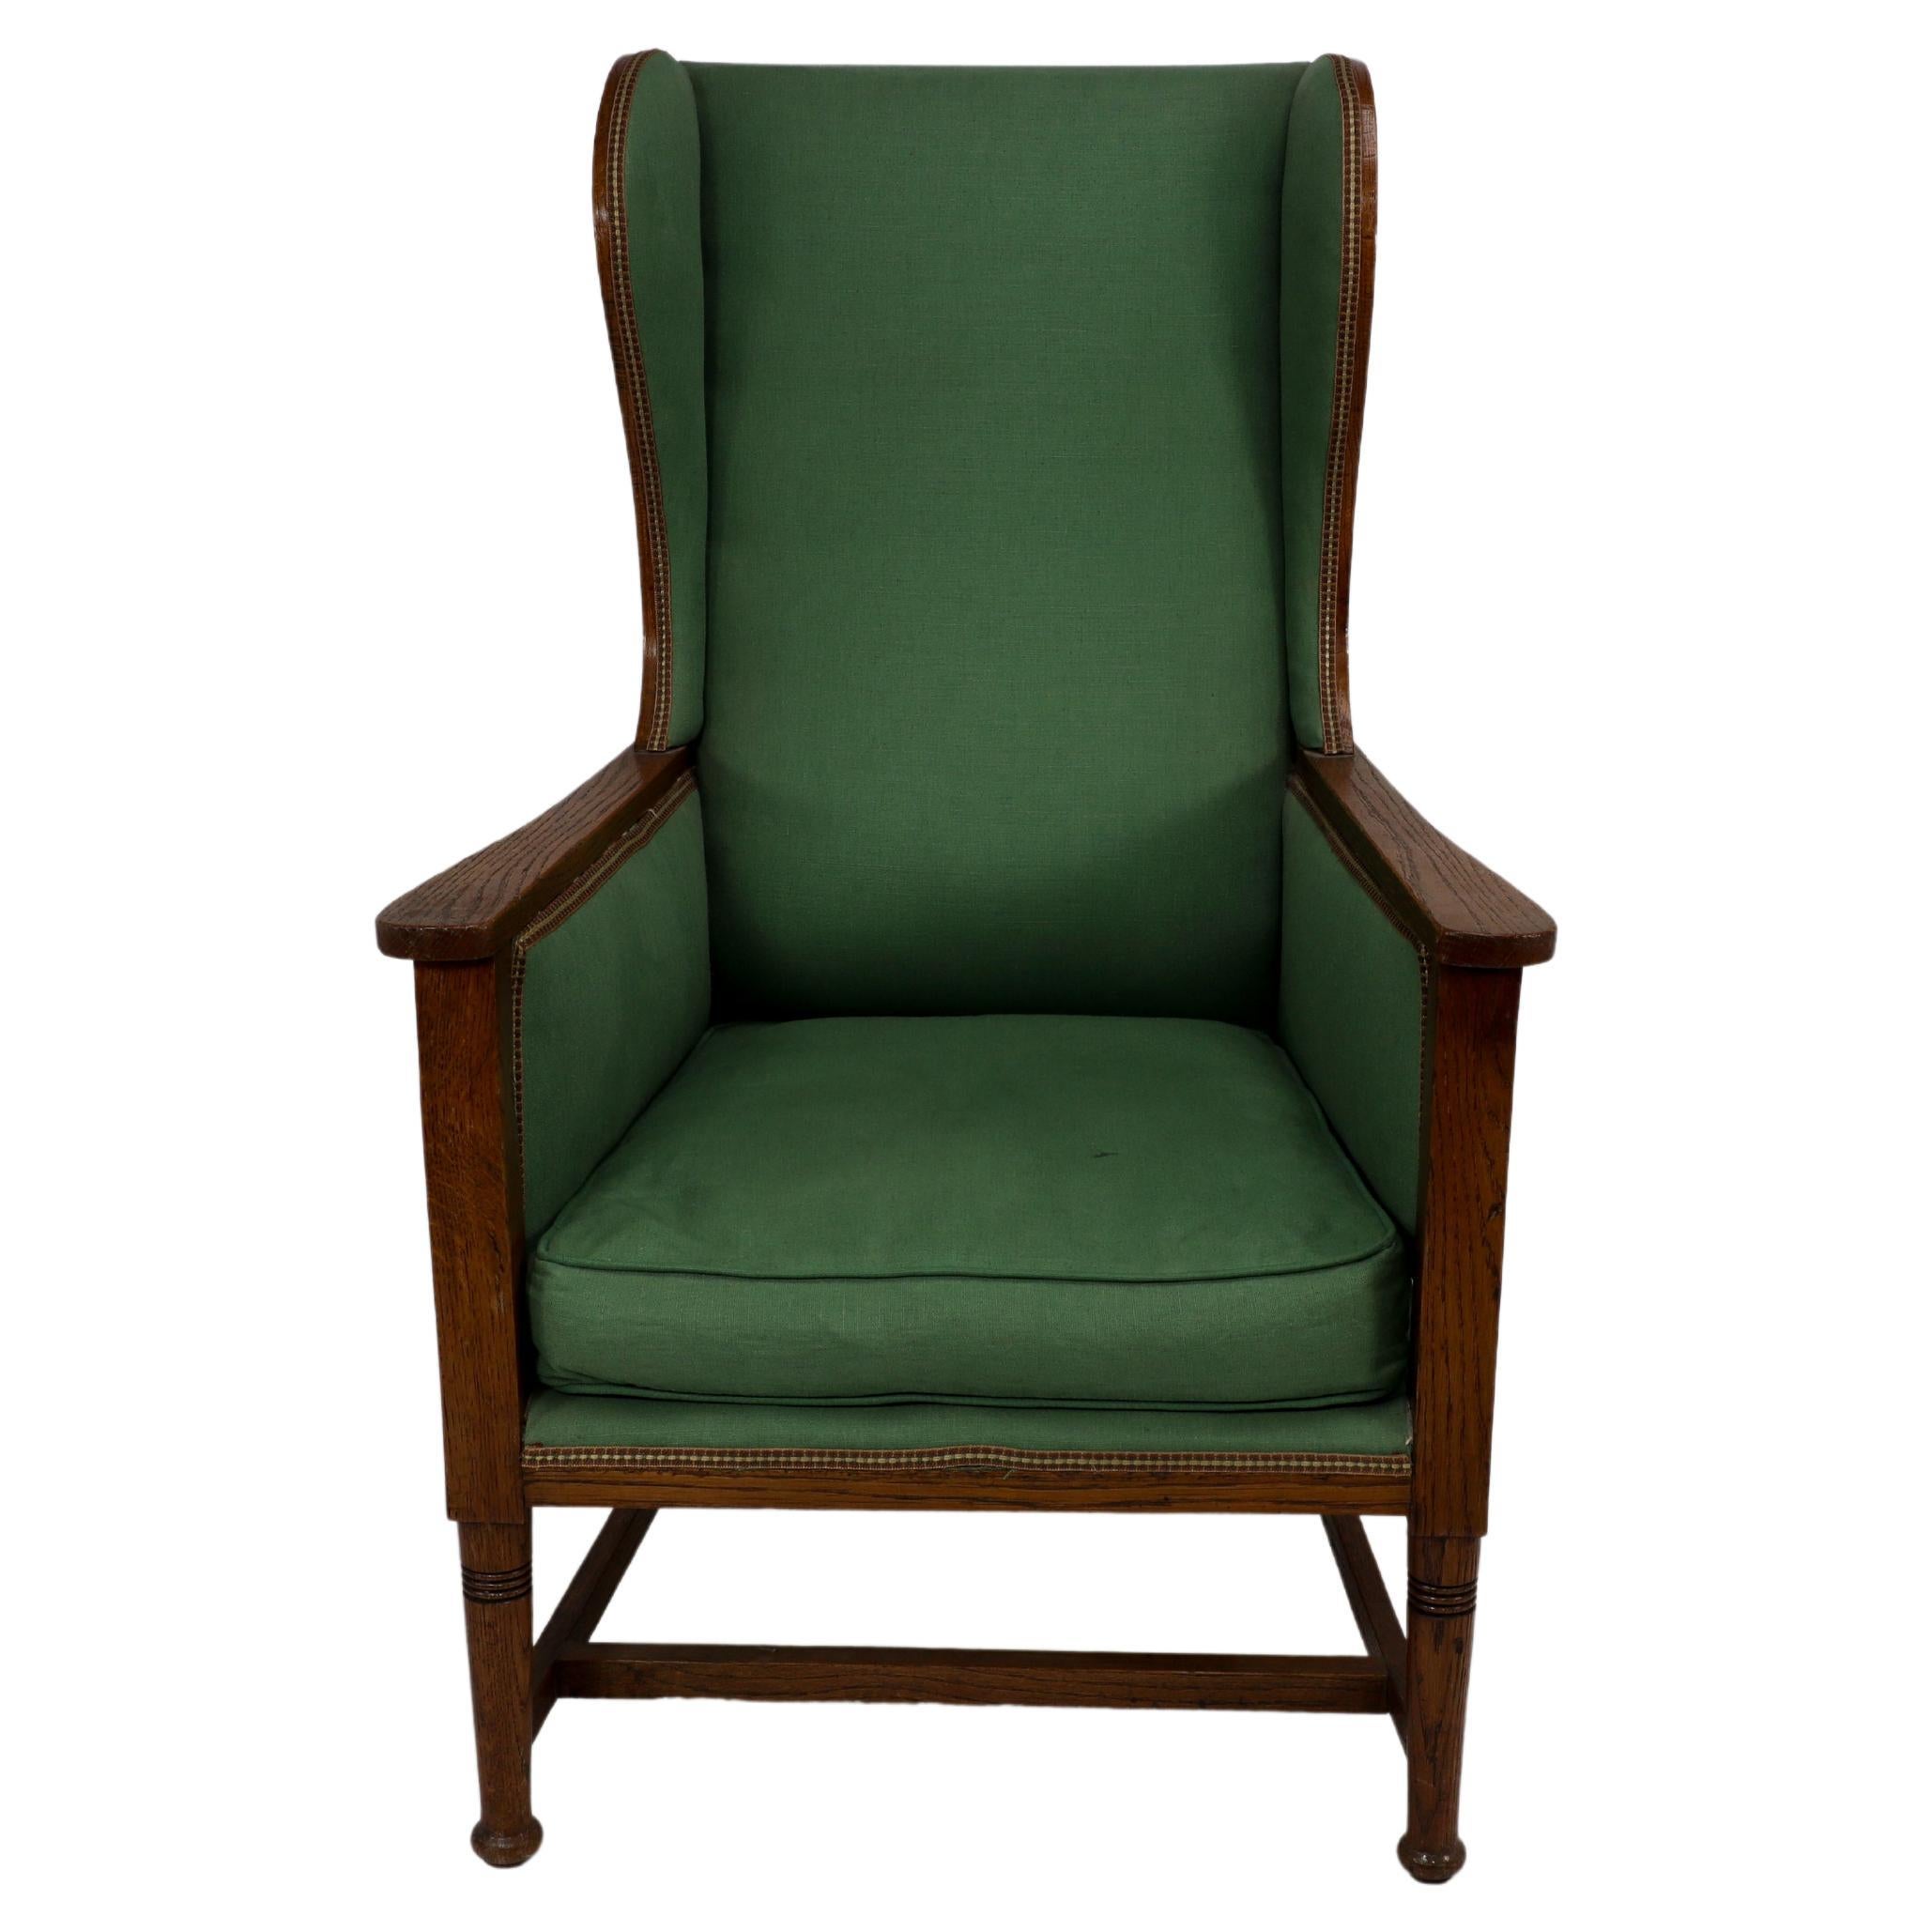 Walter Skull High Wycombe. Ein gepolsterter Sessel aus Eichenholz im Arts-and-Crafts-Stil mit schönen Eichenholzausschnitten an den äußeren Flügelseiten. Die Flügel wölben sich nach außen und verlaufen nach unten, wo sie in einem fließenden Design